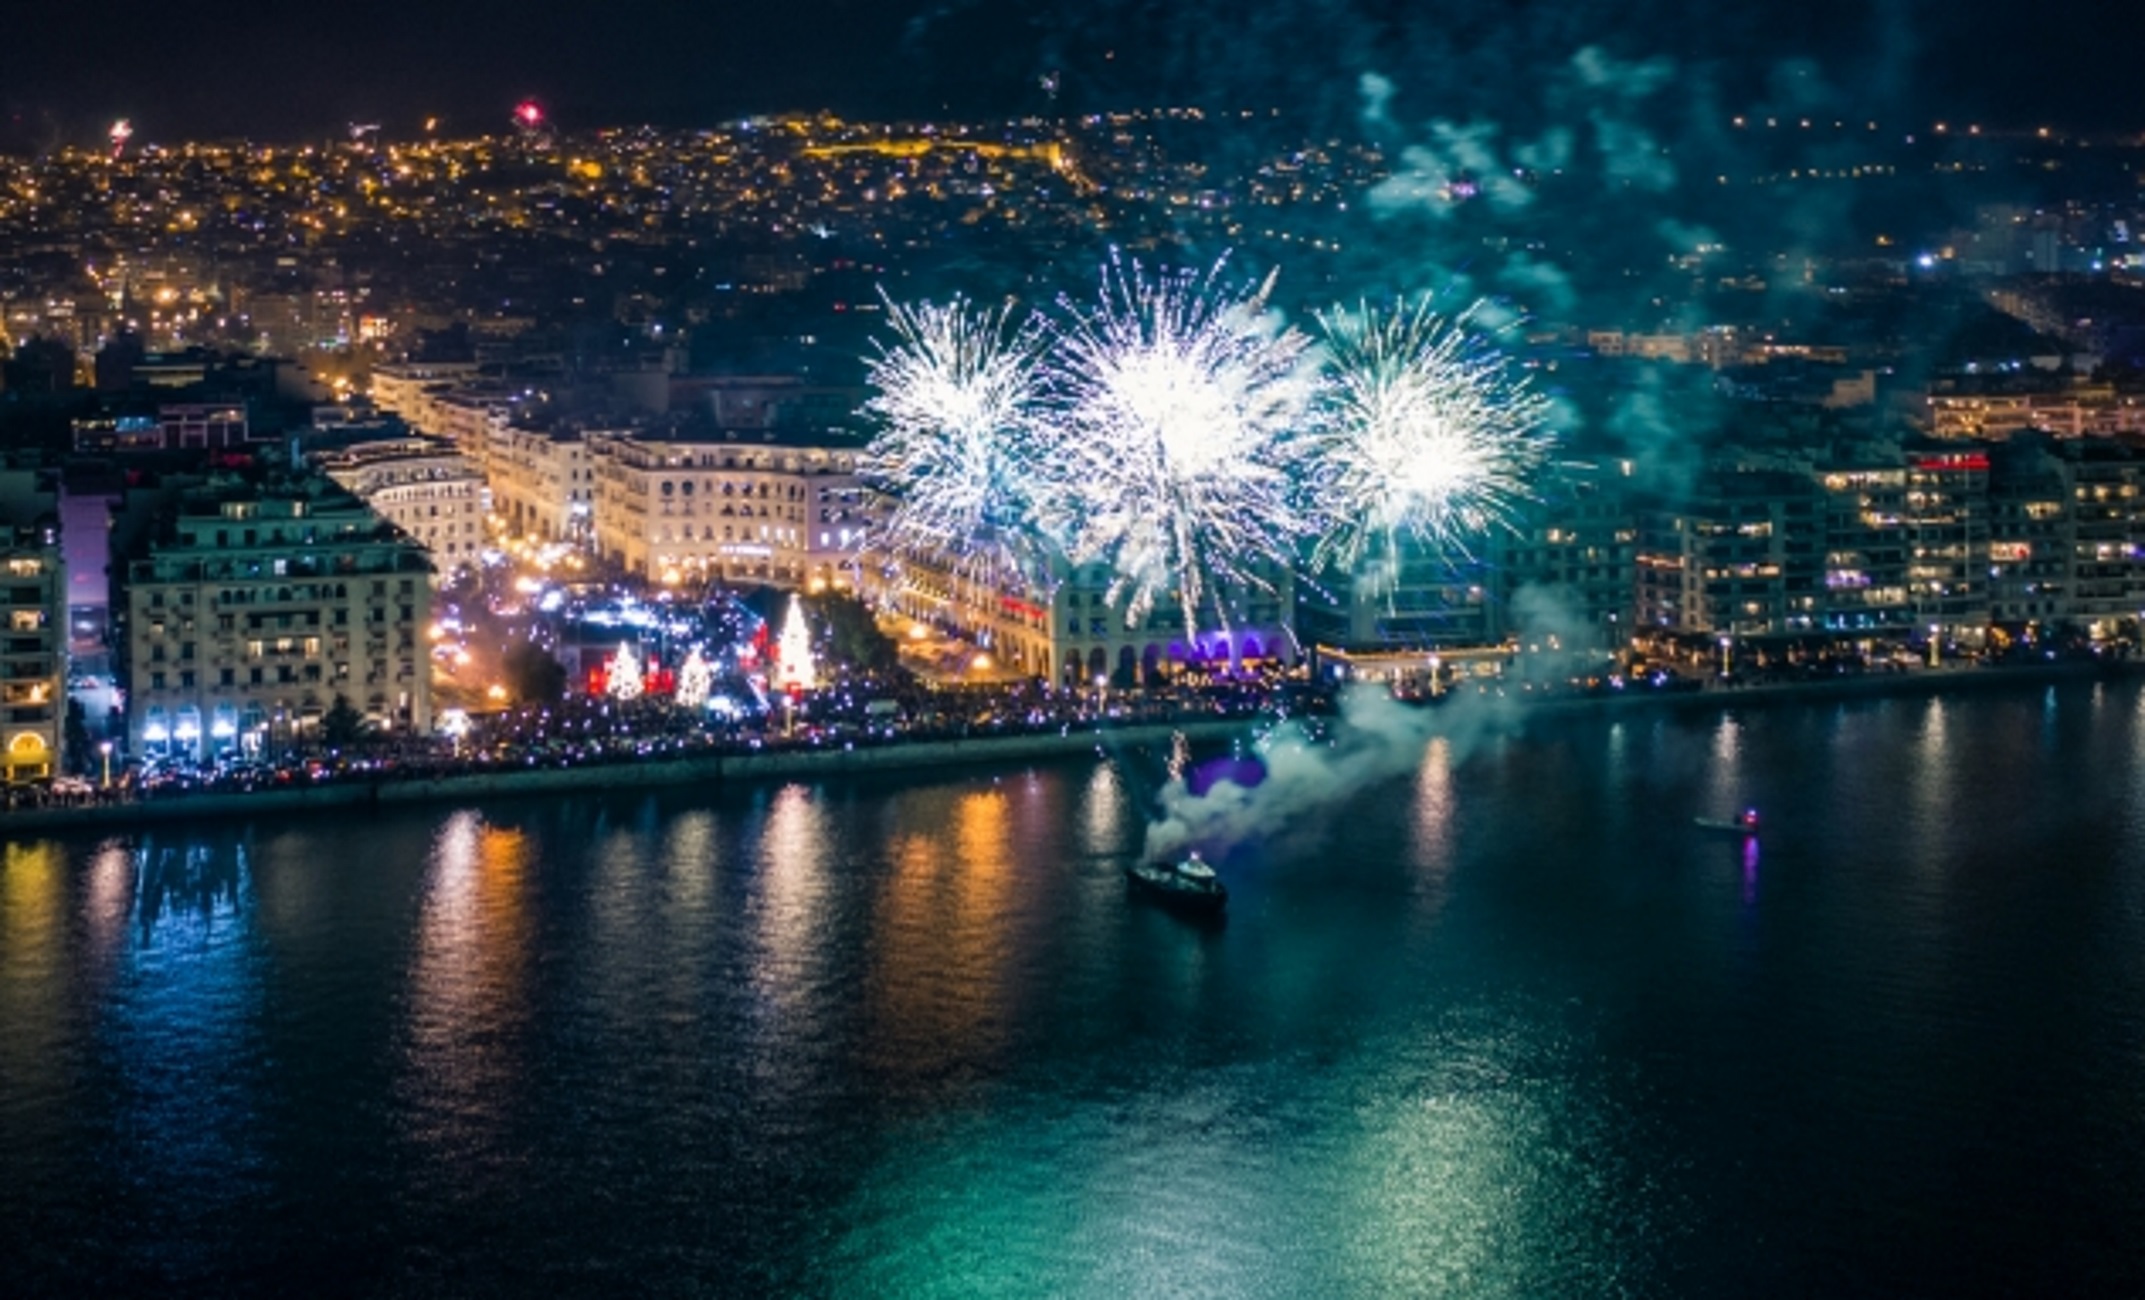 Θεσσαλονίκη: Εκπληκτικό βίντεο από drone για την υποδοχή του 2020! Έτσι γιόρτασαν την αλλαγή του χρόνου